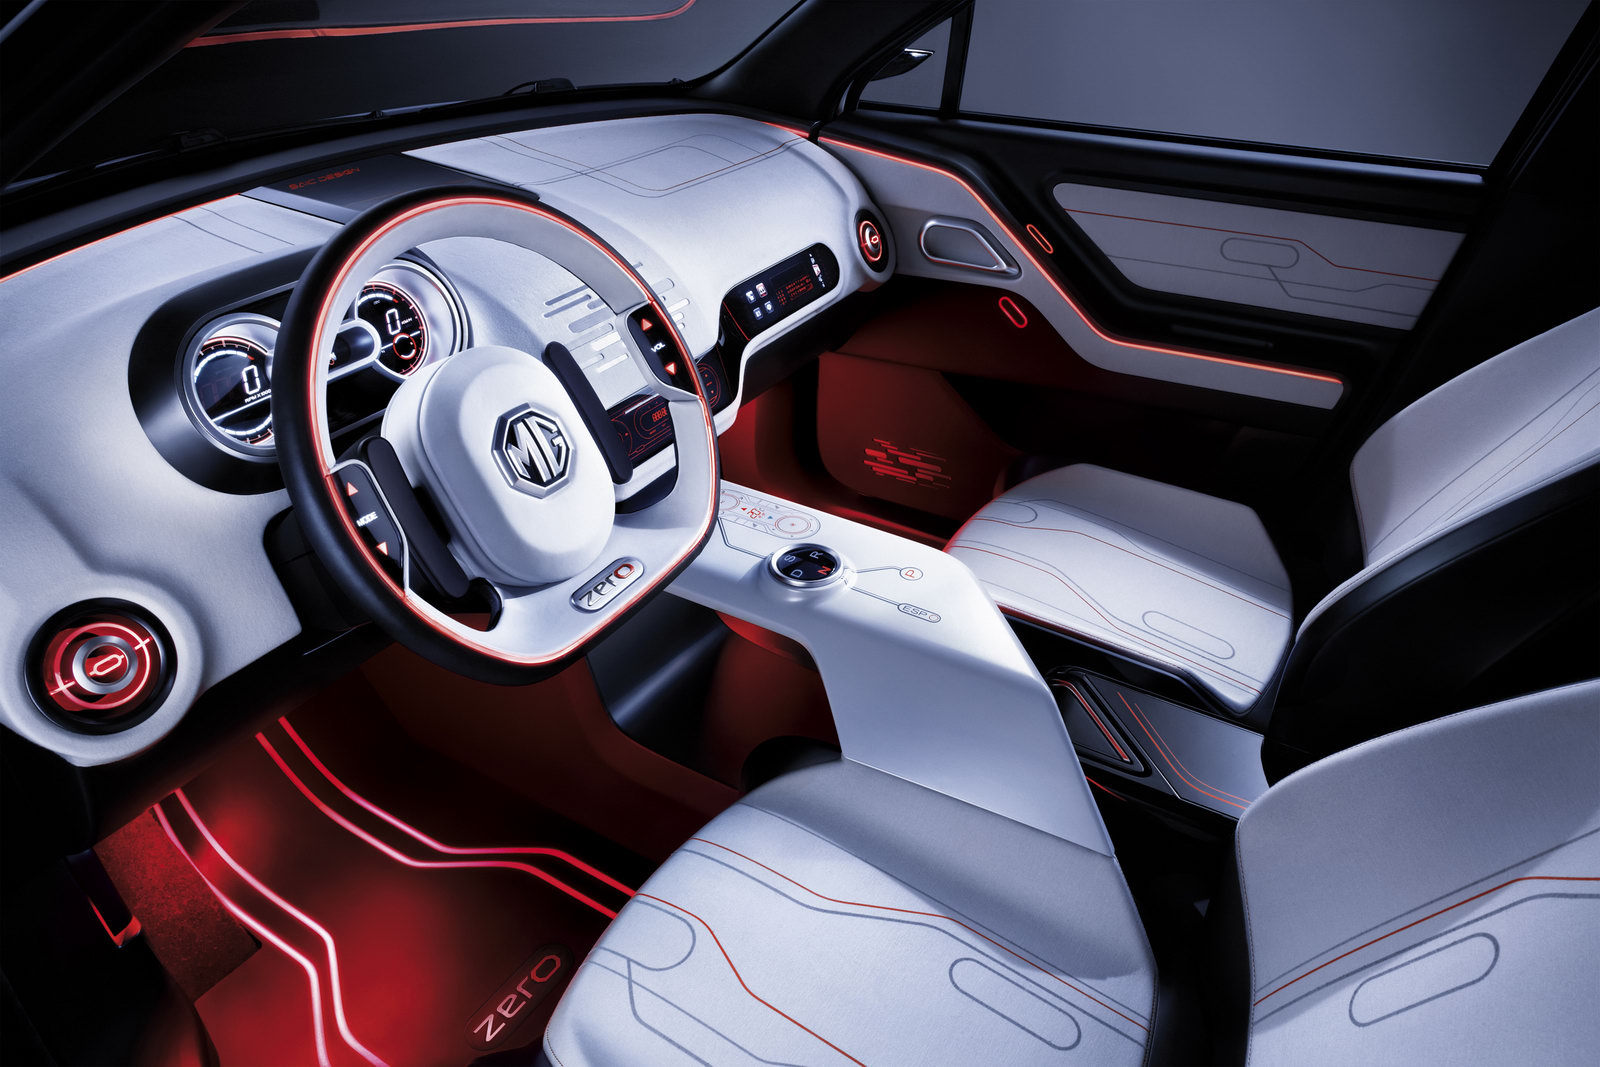 Interiorul lui MG Zero Concept arata futurist si beneficiaza de idei interesante